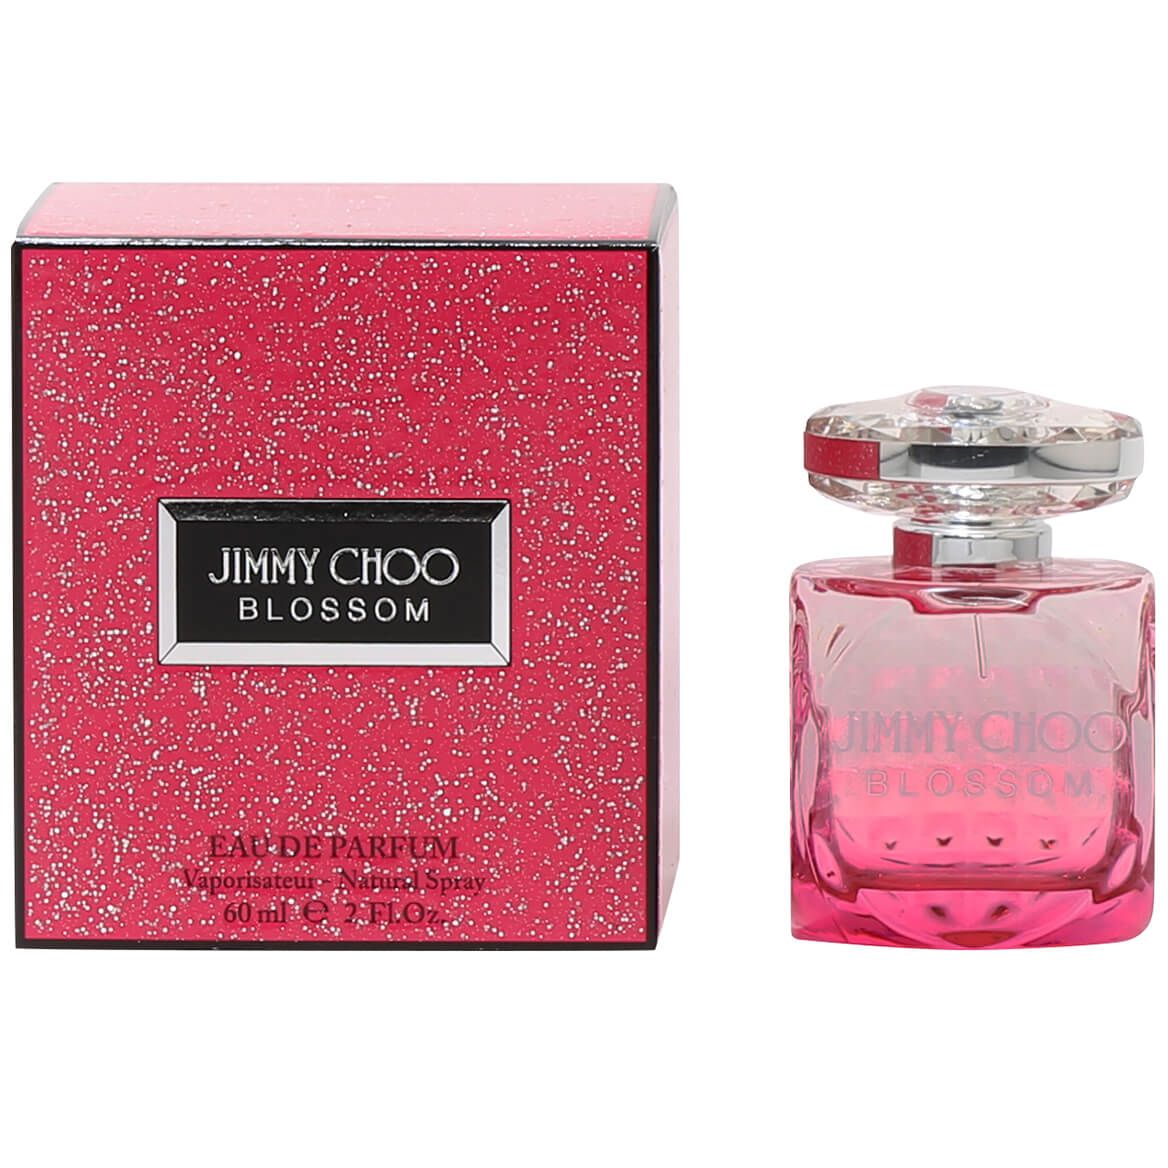 Jimmy Choo Blossom for Women EDP, 2 oz. + '-' + 366853